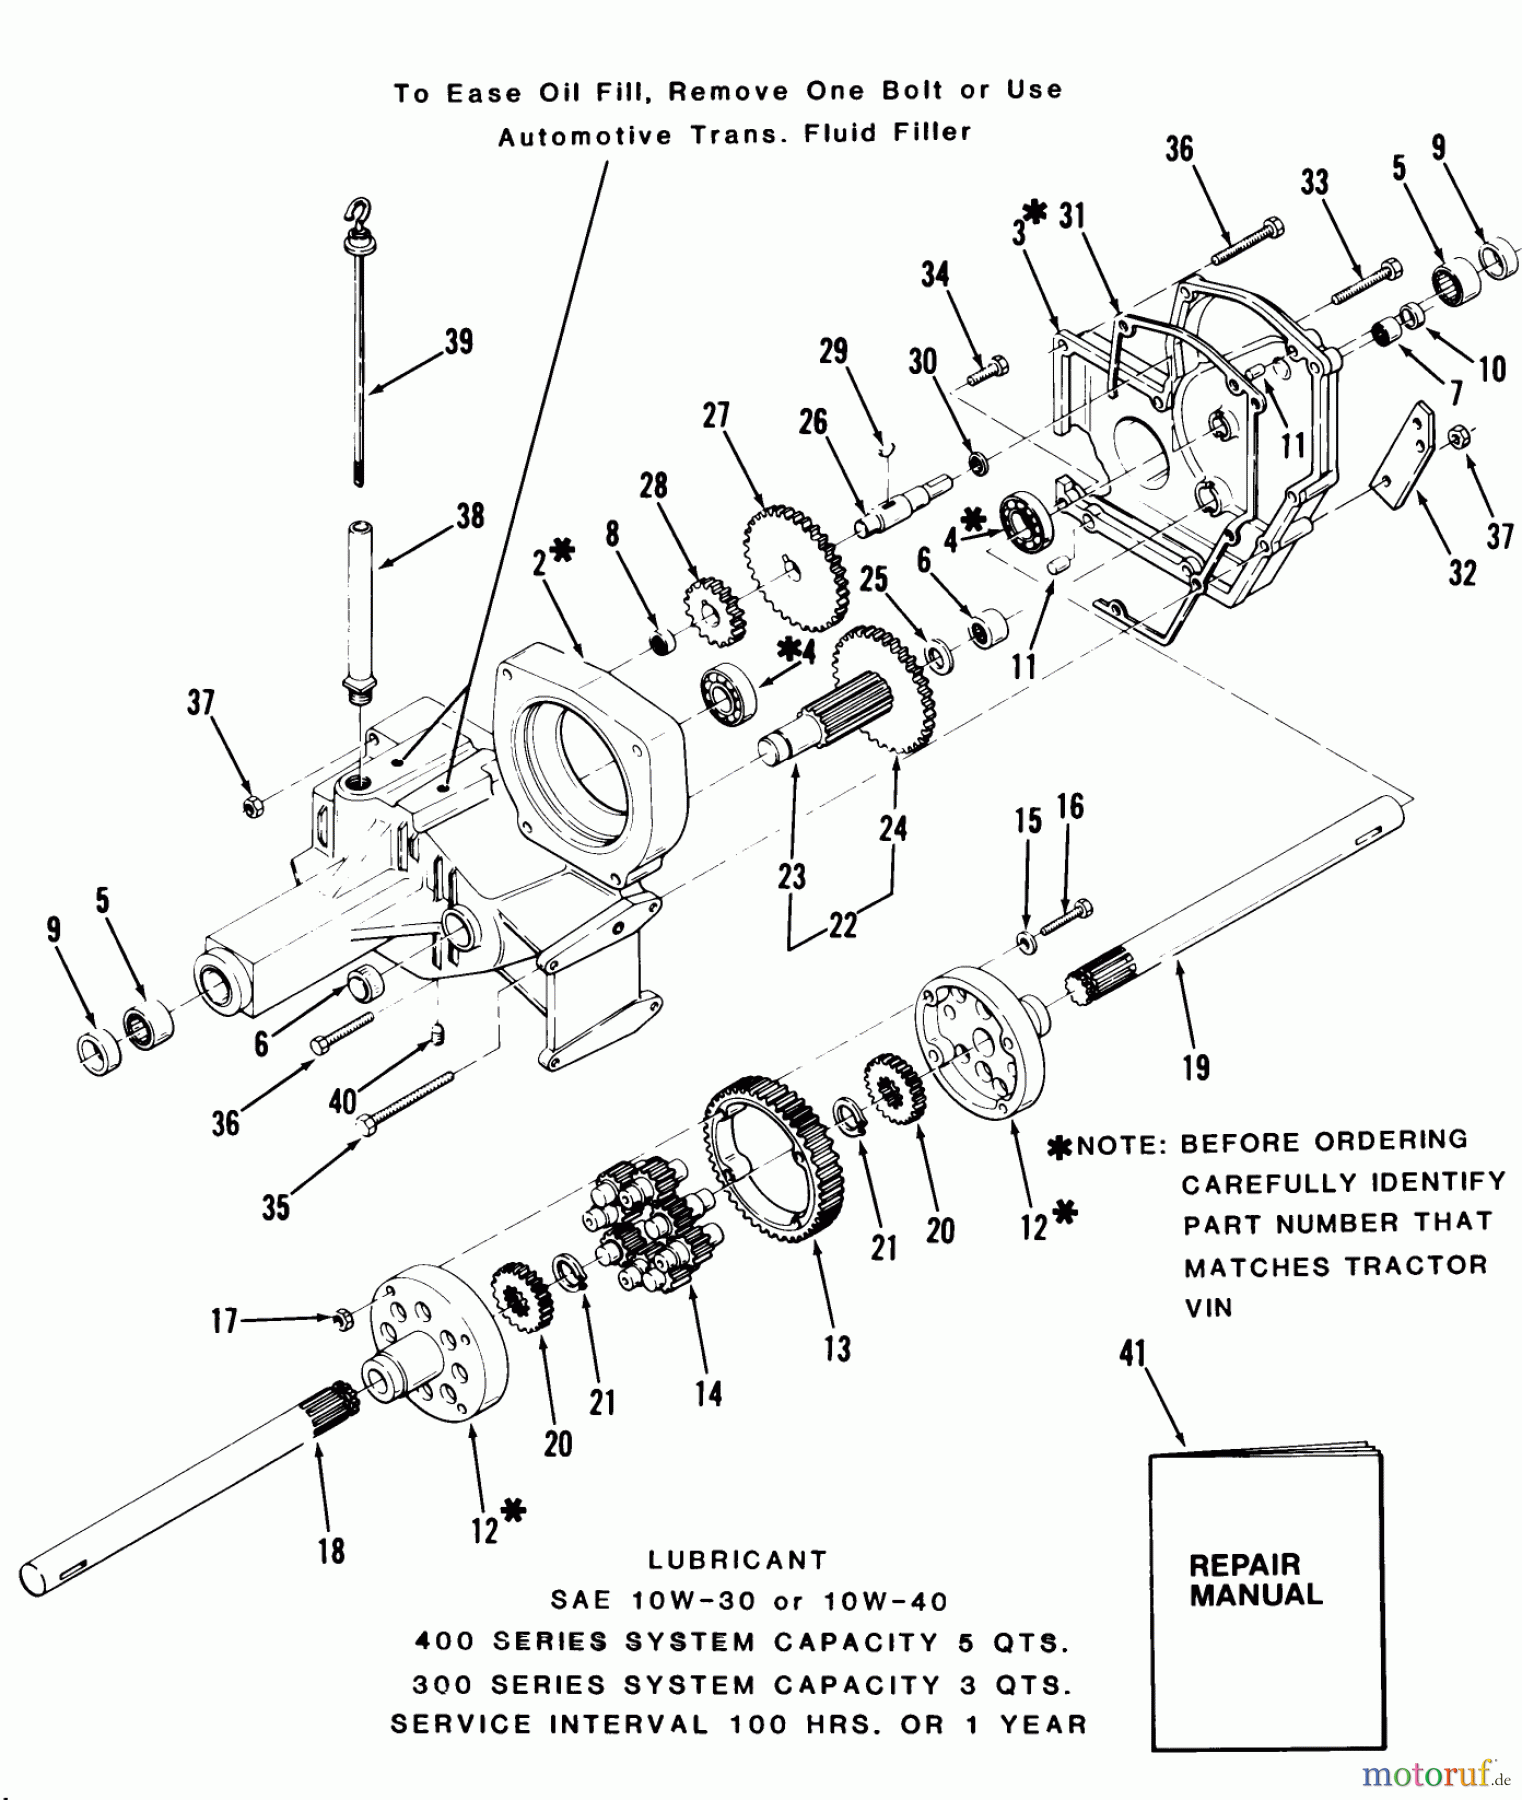  Toro Neu Mowers, Lawn & Garden Tractor Seite 1 21-12KE02 (312-A) - Toro 312-A Garden Tractor, 1986 TRANSAXLE